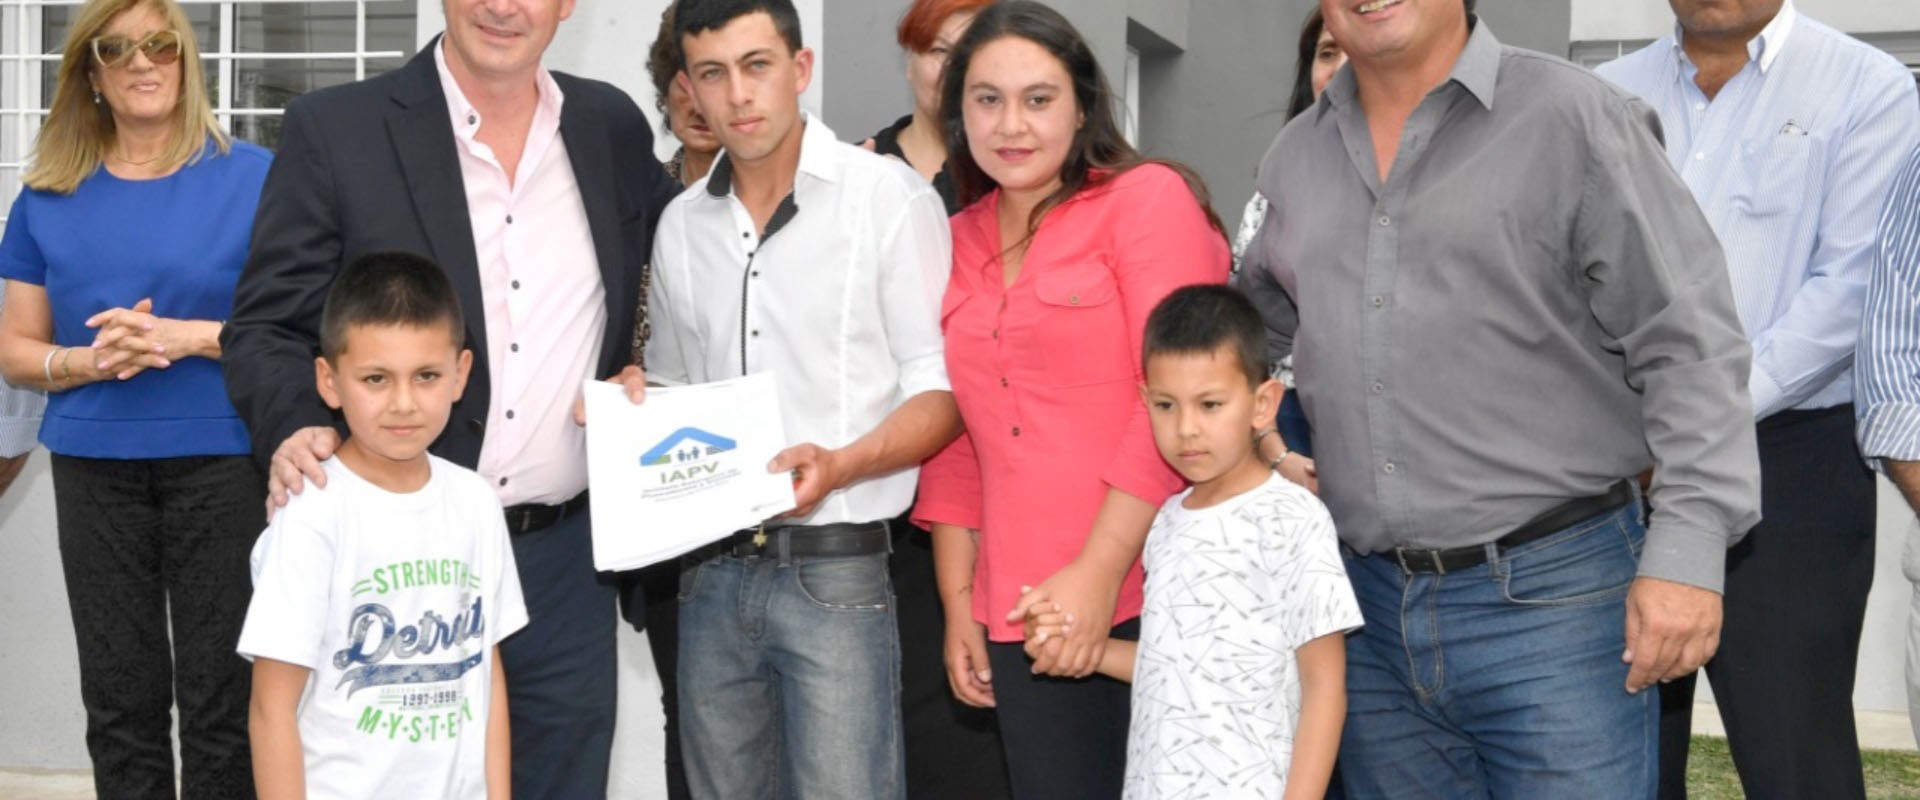 La provincia rubricó convenio  para construir nuevas viviendas en Gualeguaychú y  Viale  con recursos propios